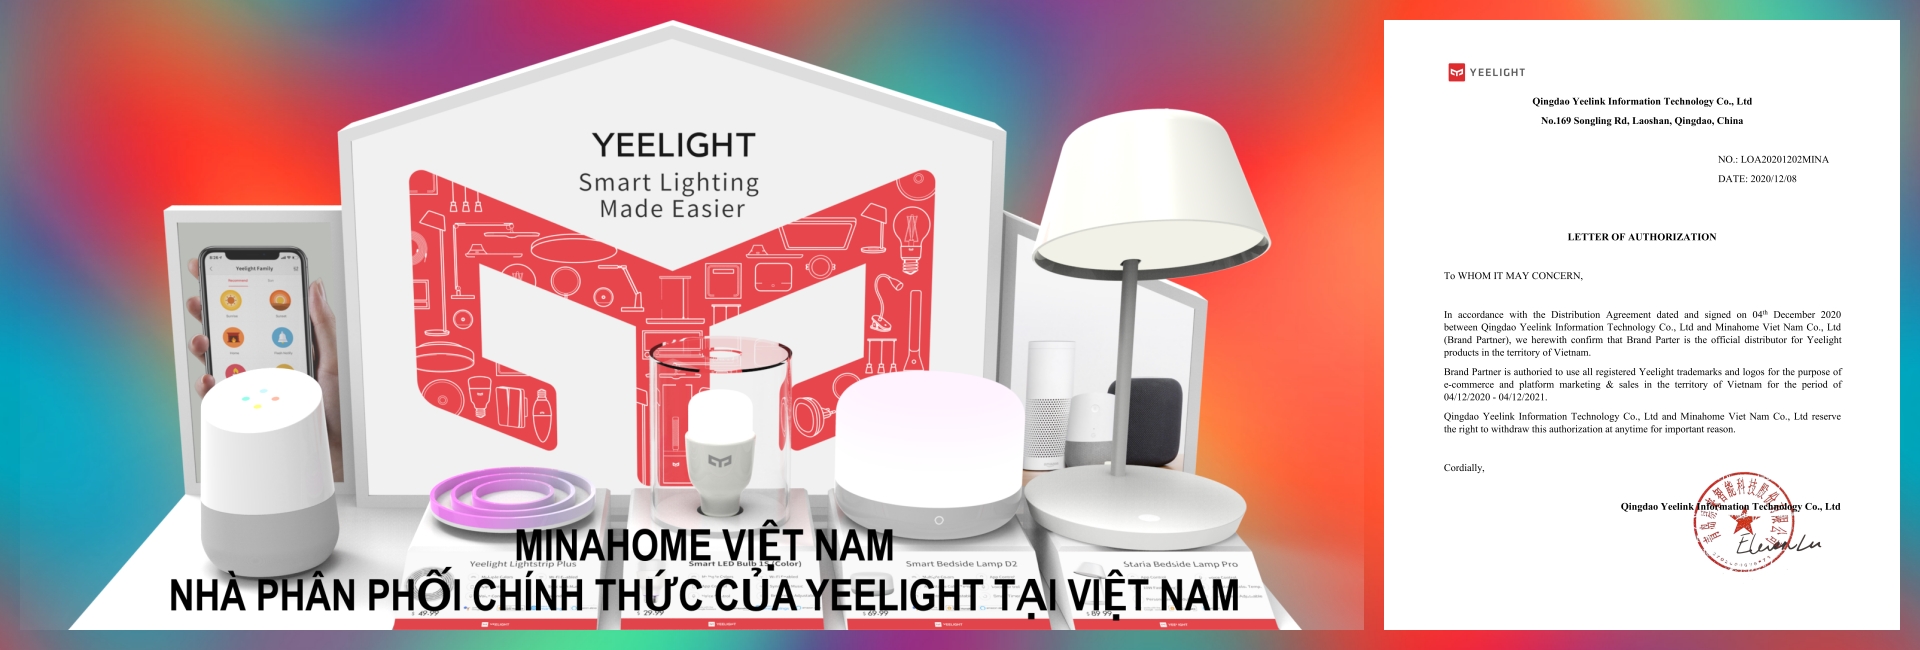 Đèn thông minh Yeelight smart lighting